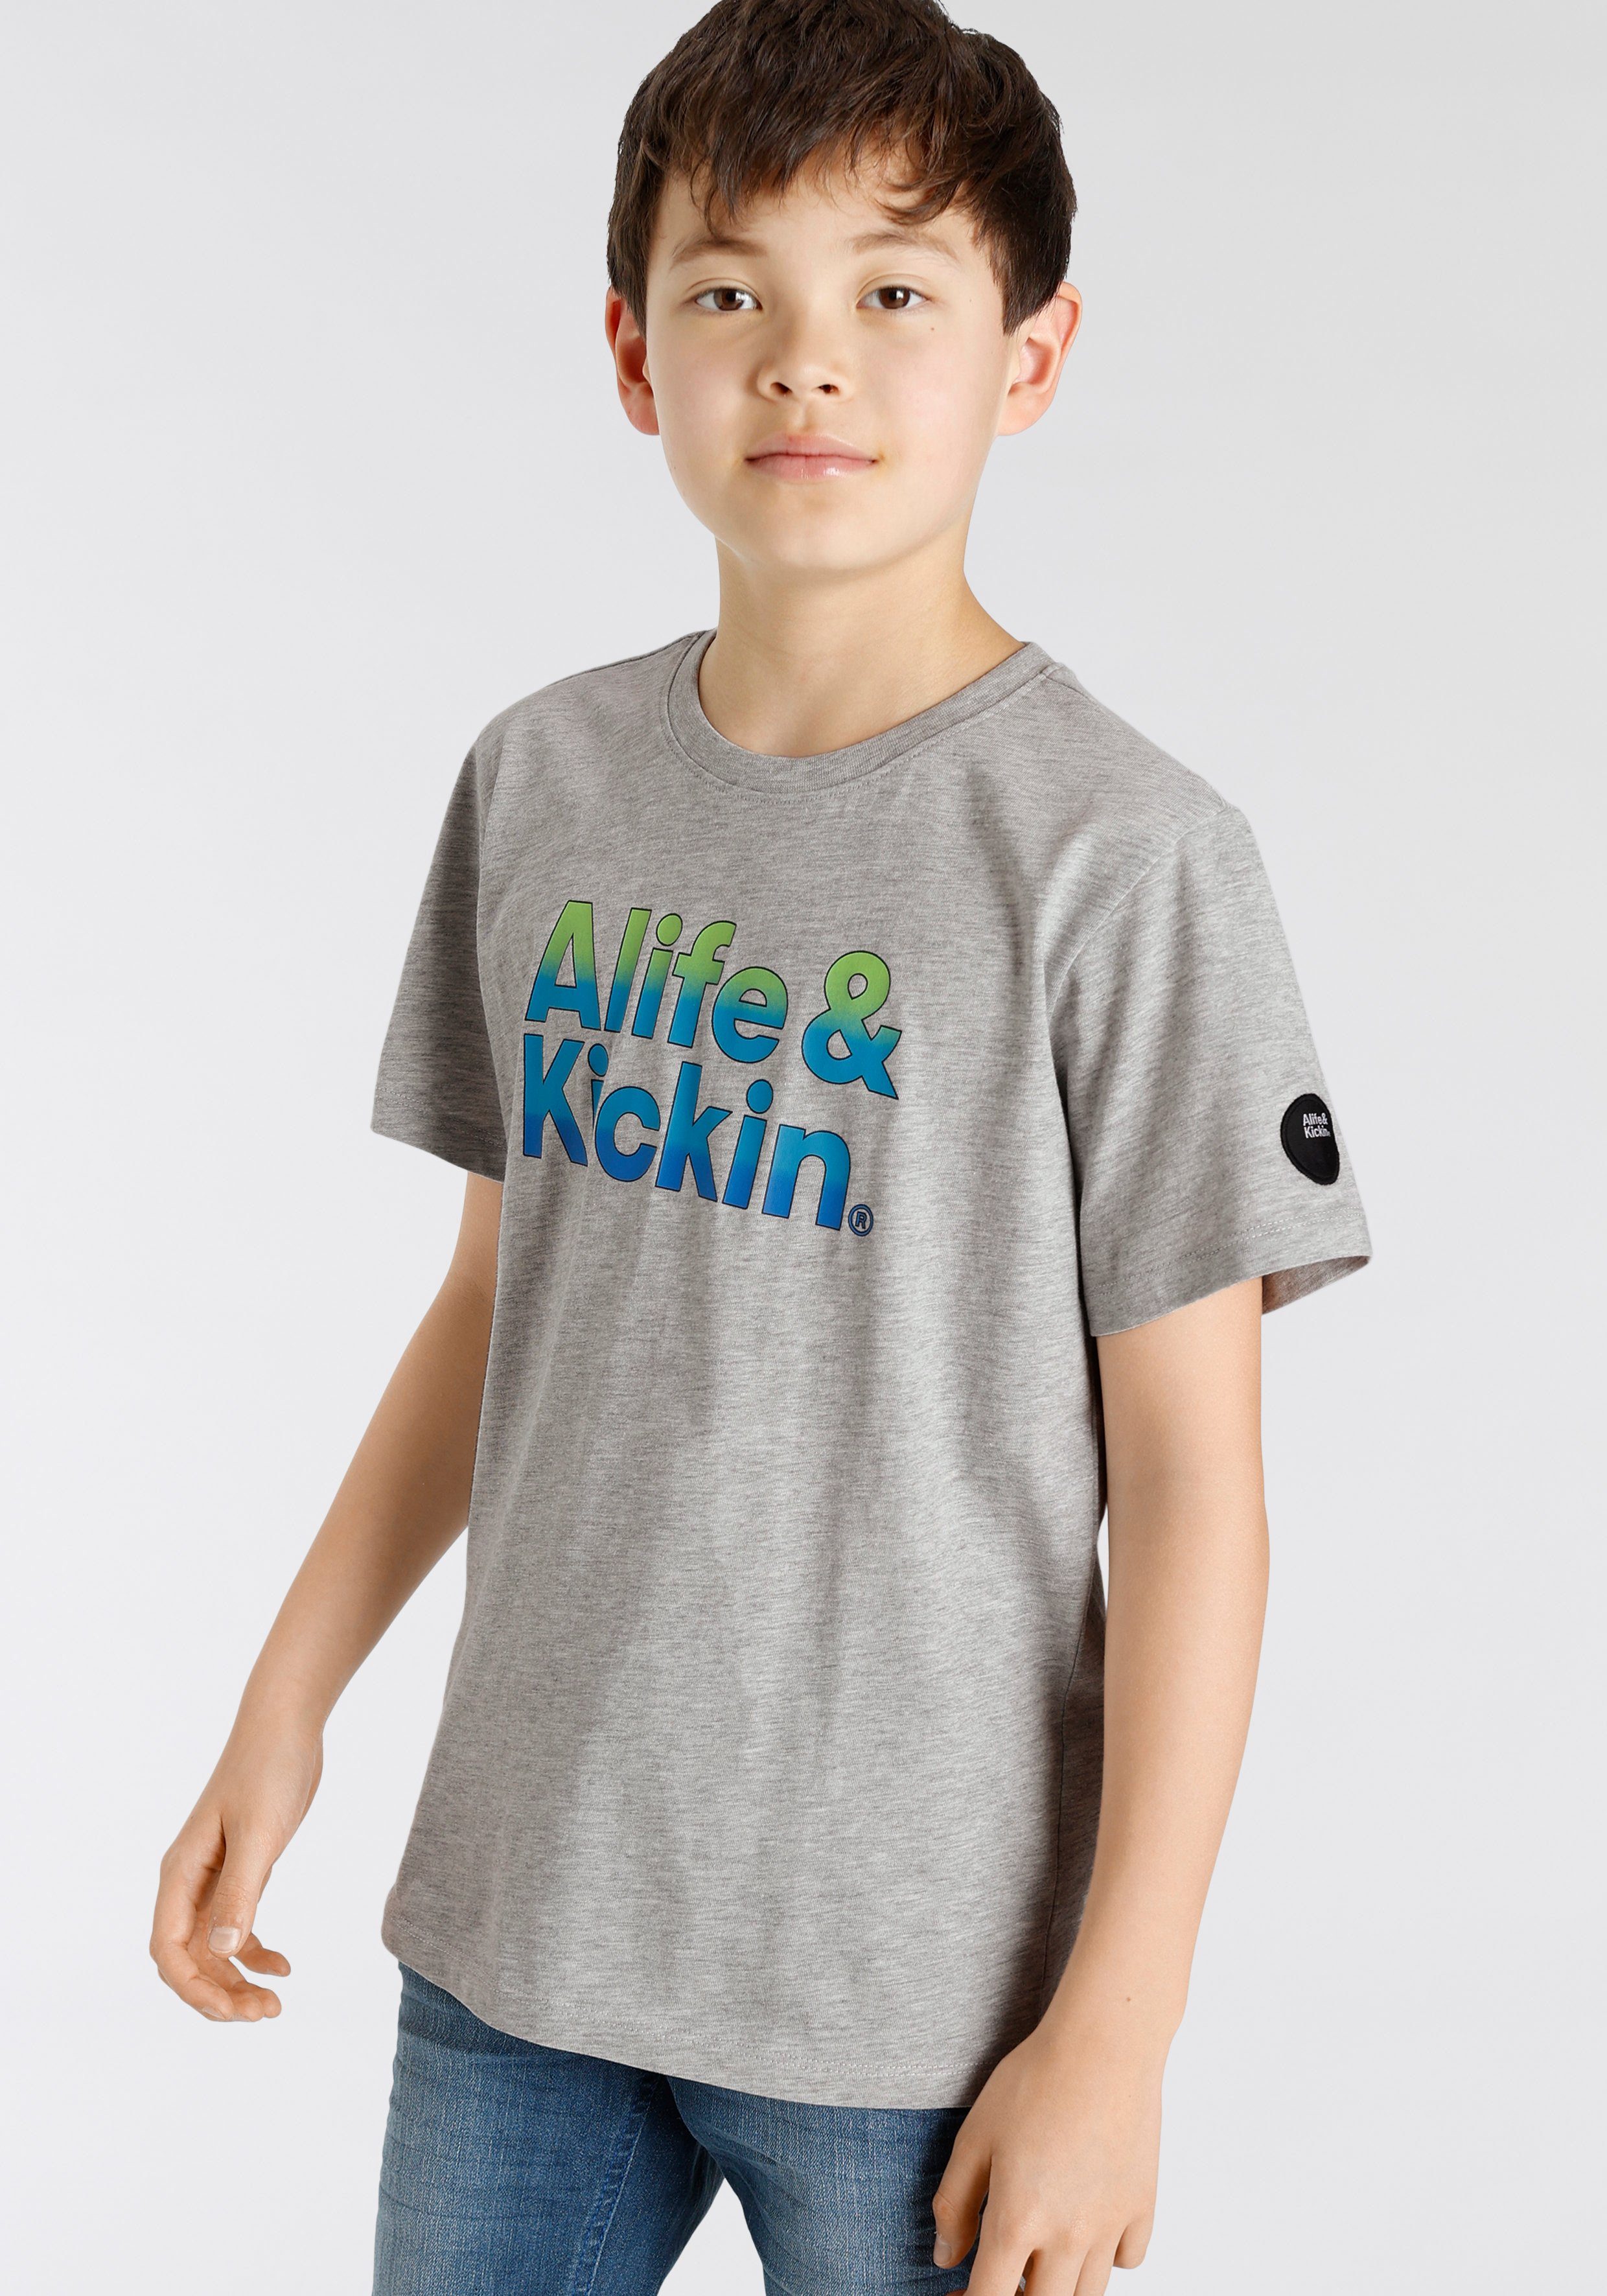 T-Shirt für melierter in Logo-Print Alife MARKE! Kickin NEUE Alife&Kickin Kids Qualität, &